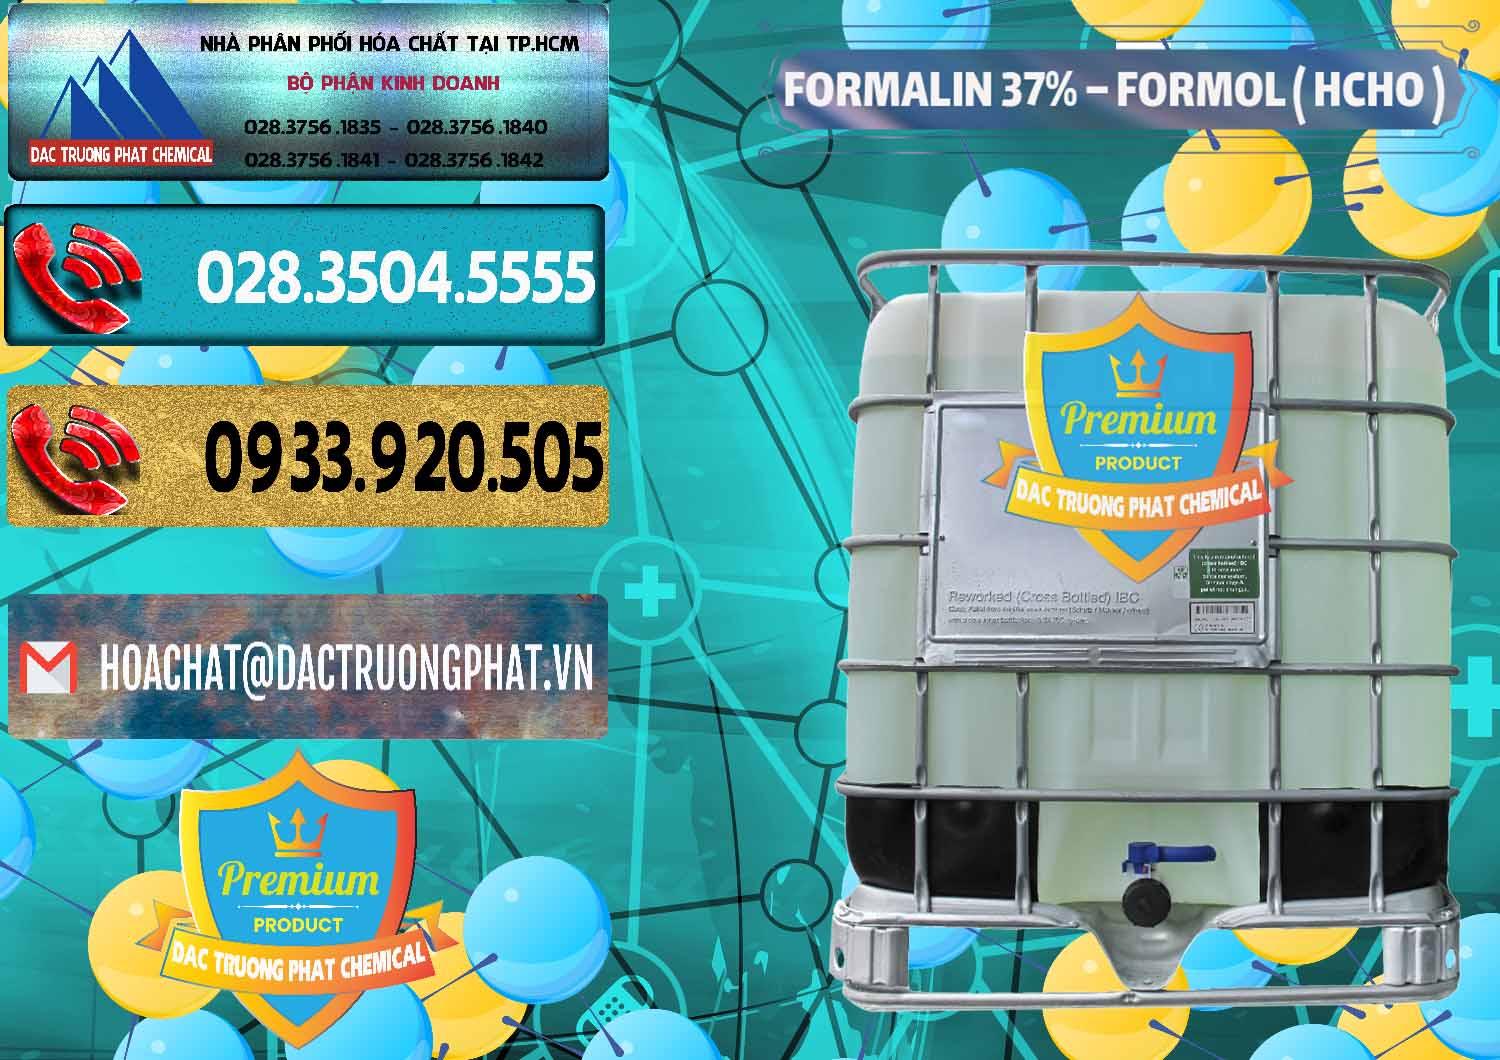 Cung cấp - kinh doanh Formalin - Formol ( HCHO ) 37% Việt Nam - 0187 - Nơi chuyên cung ứng - phân phối hóa chất tại TP.HCM - hoachatdetnhuom.com